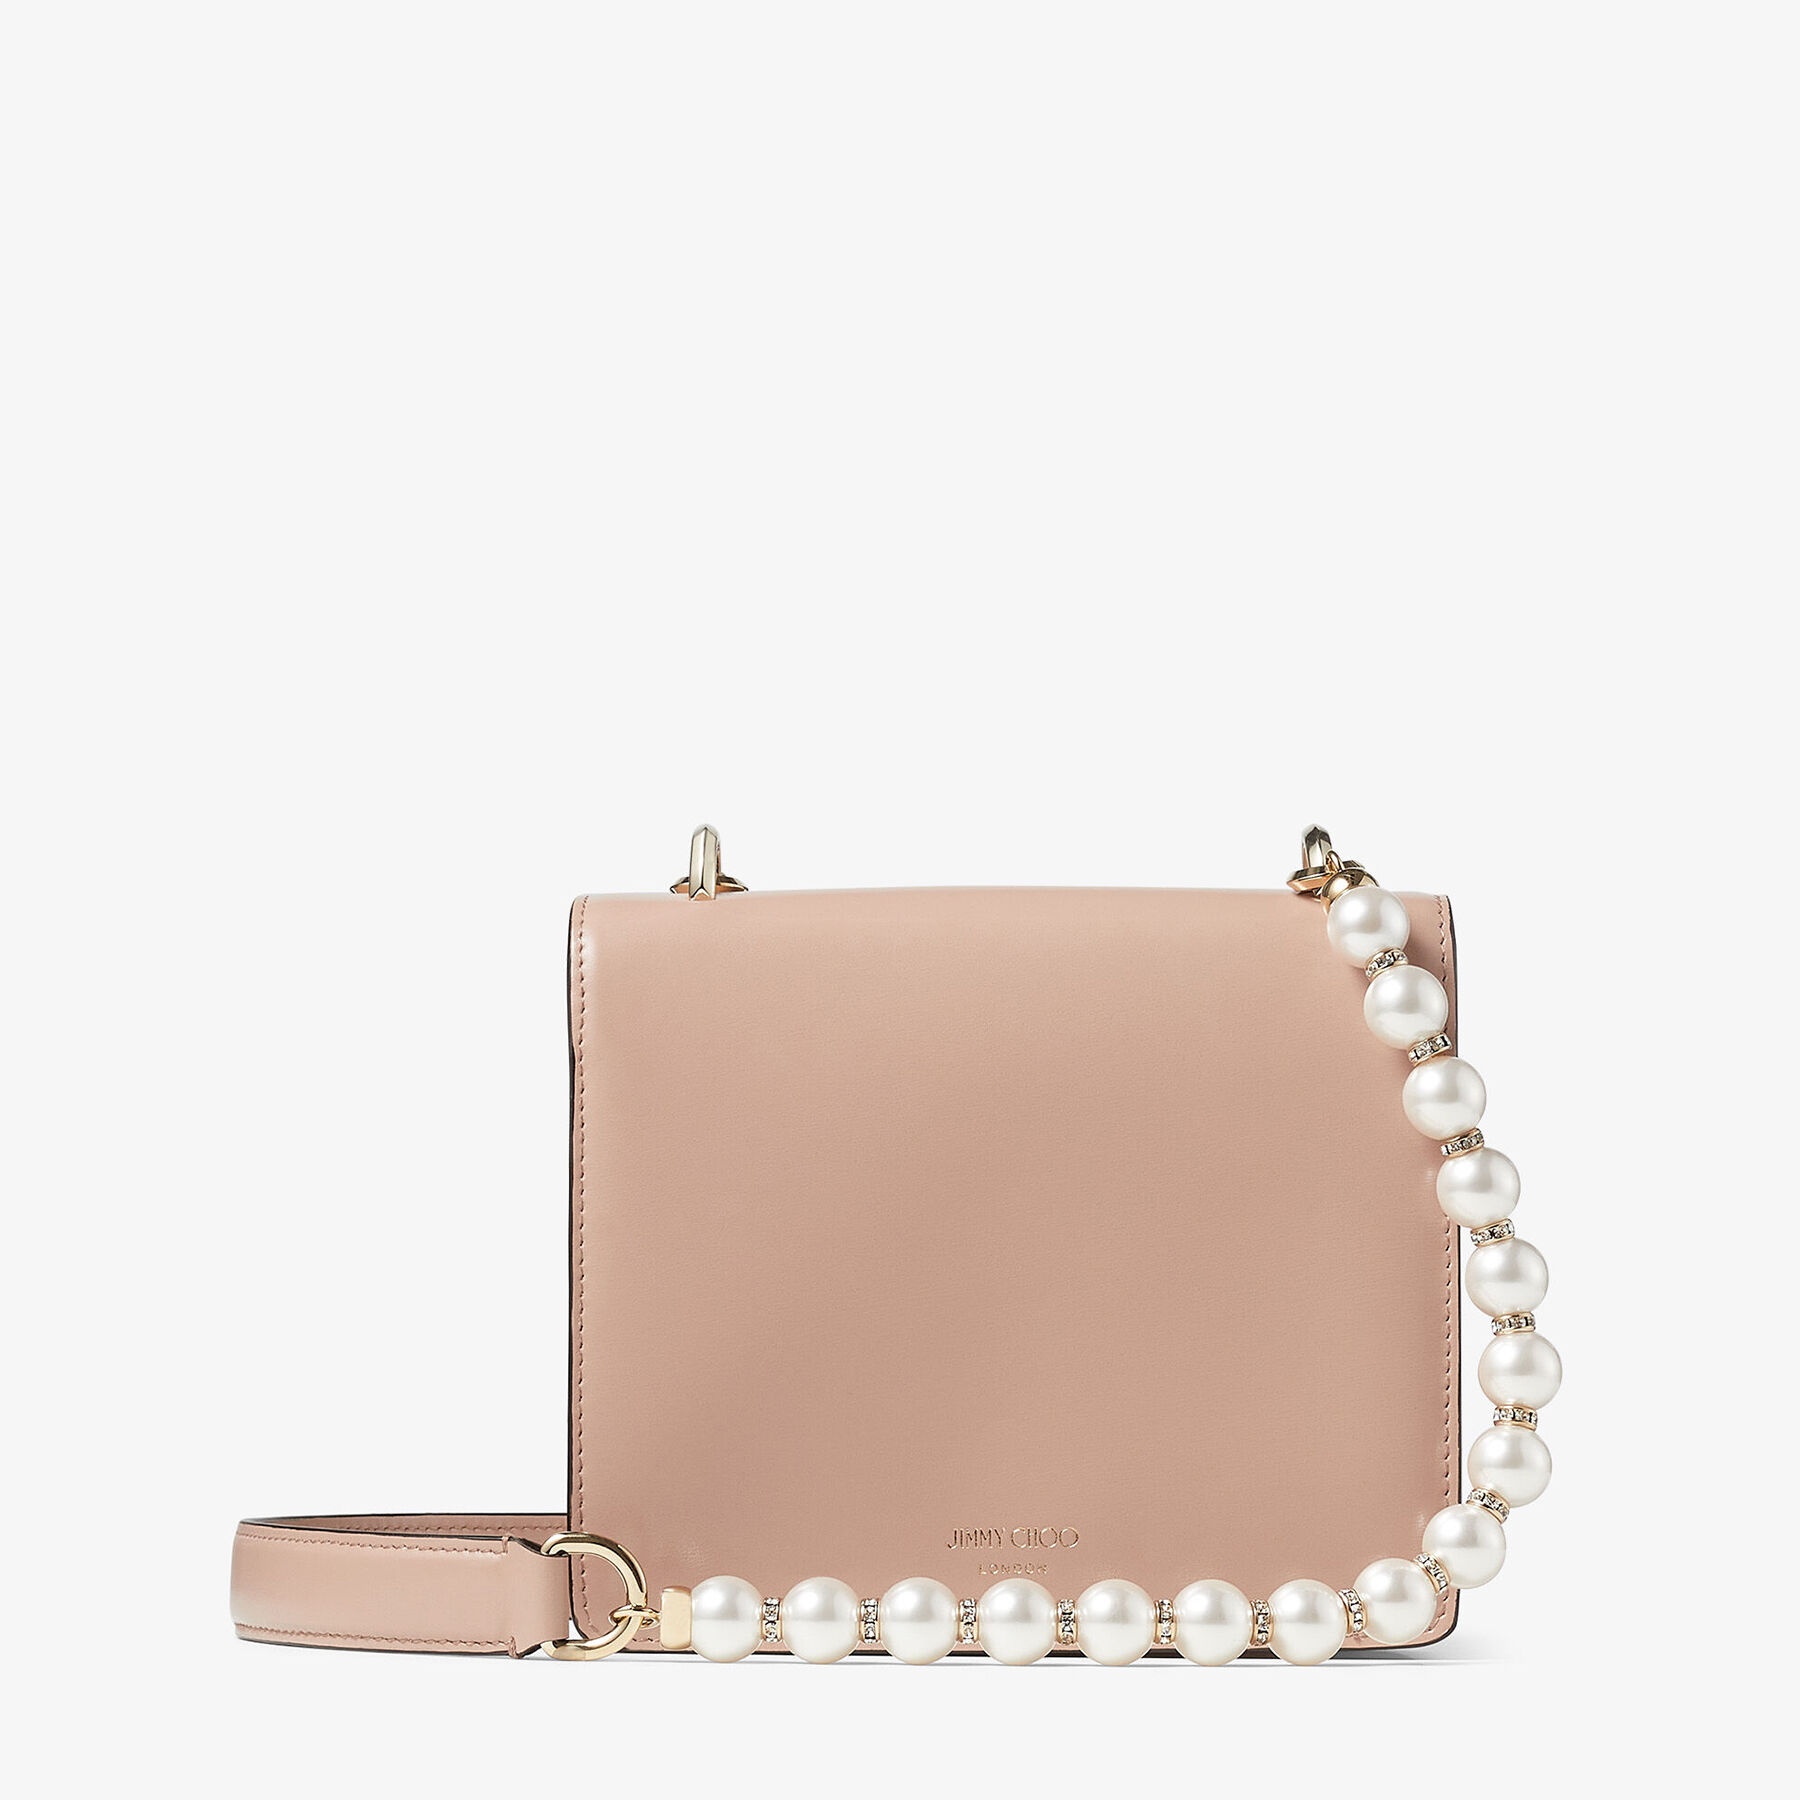 Varenne Quad XS
Ballet Pink Box Leather Shoulder Bag with Pearl Strap - 8